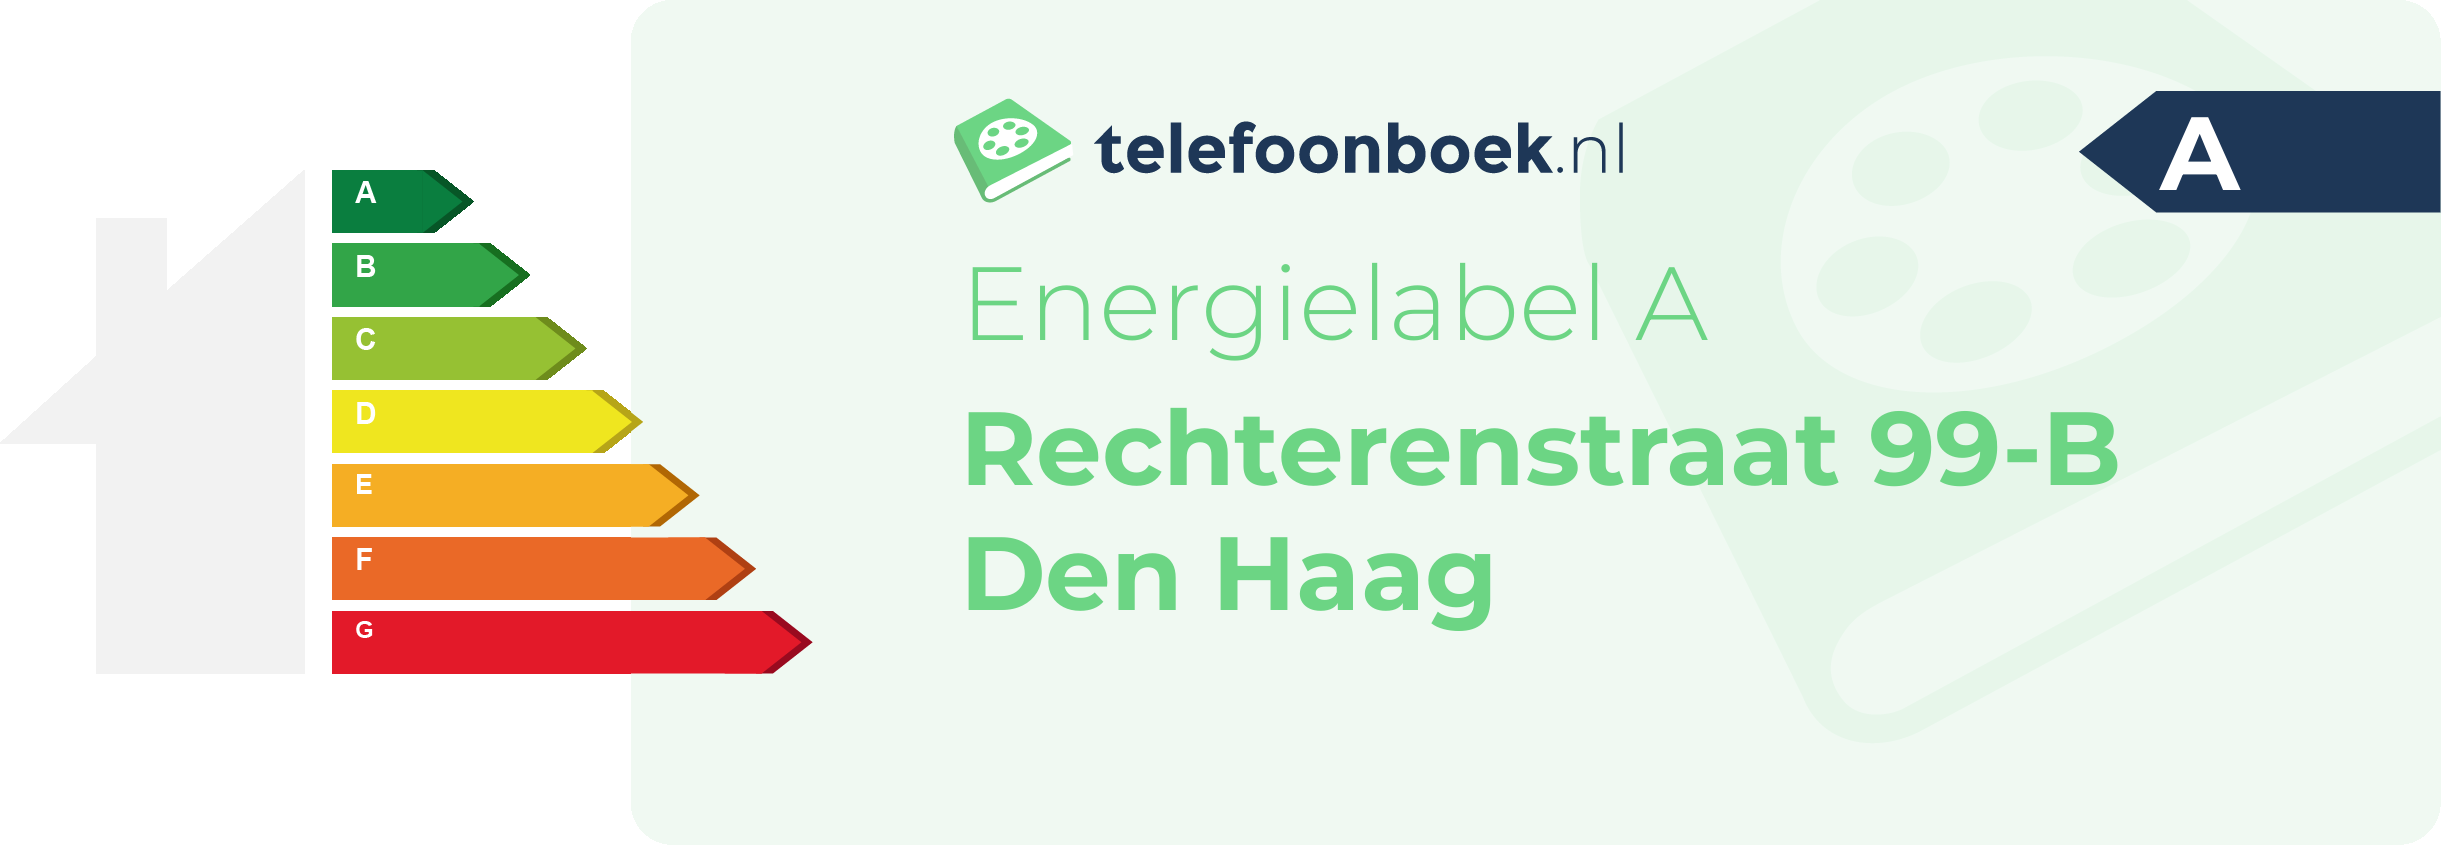 Energielabel Rechterenstraat 99-B Den Haag